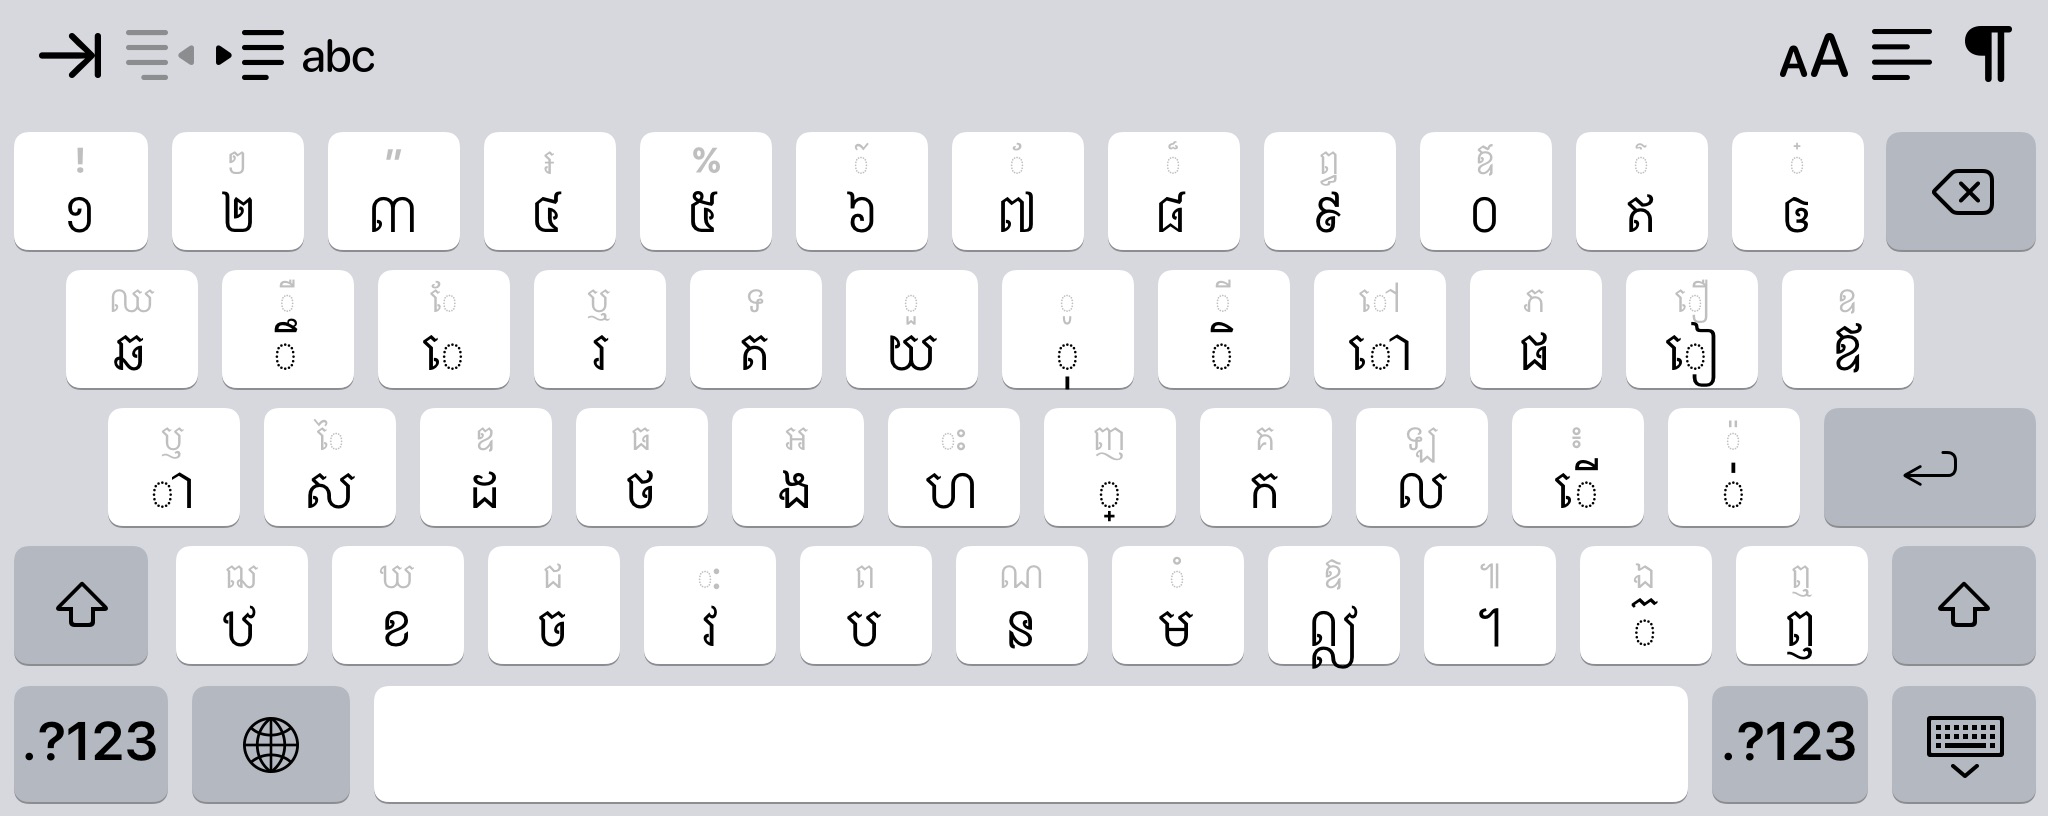 I Want Typing Khmer Unicode On Ipad Keybo Apple Community